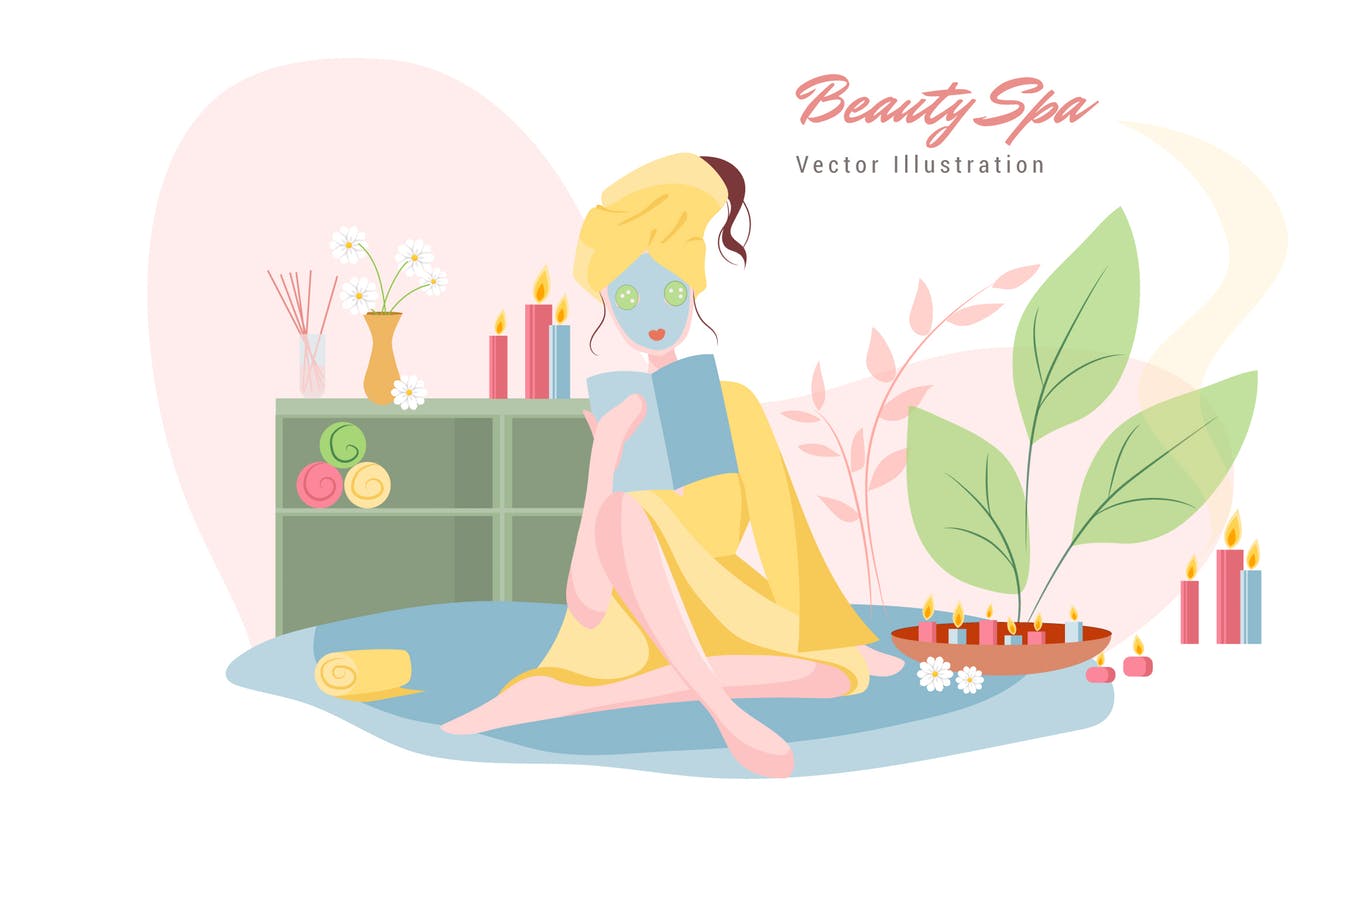 美容SPA主题矢量插画蚂蚁素材精选设计素材v7 Beauty Spa Vector Illustration插图